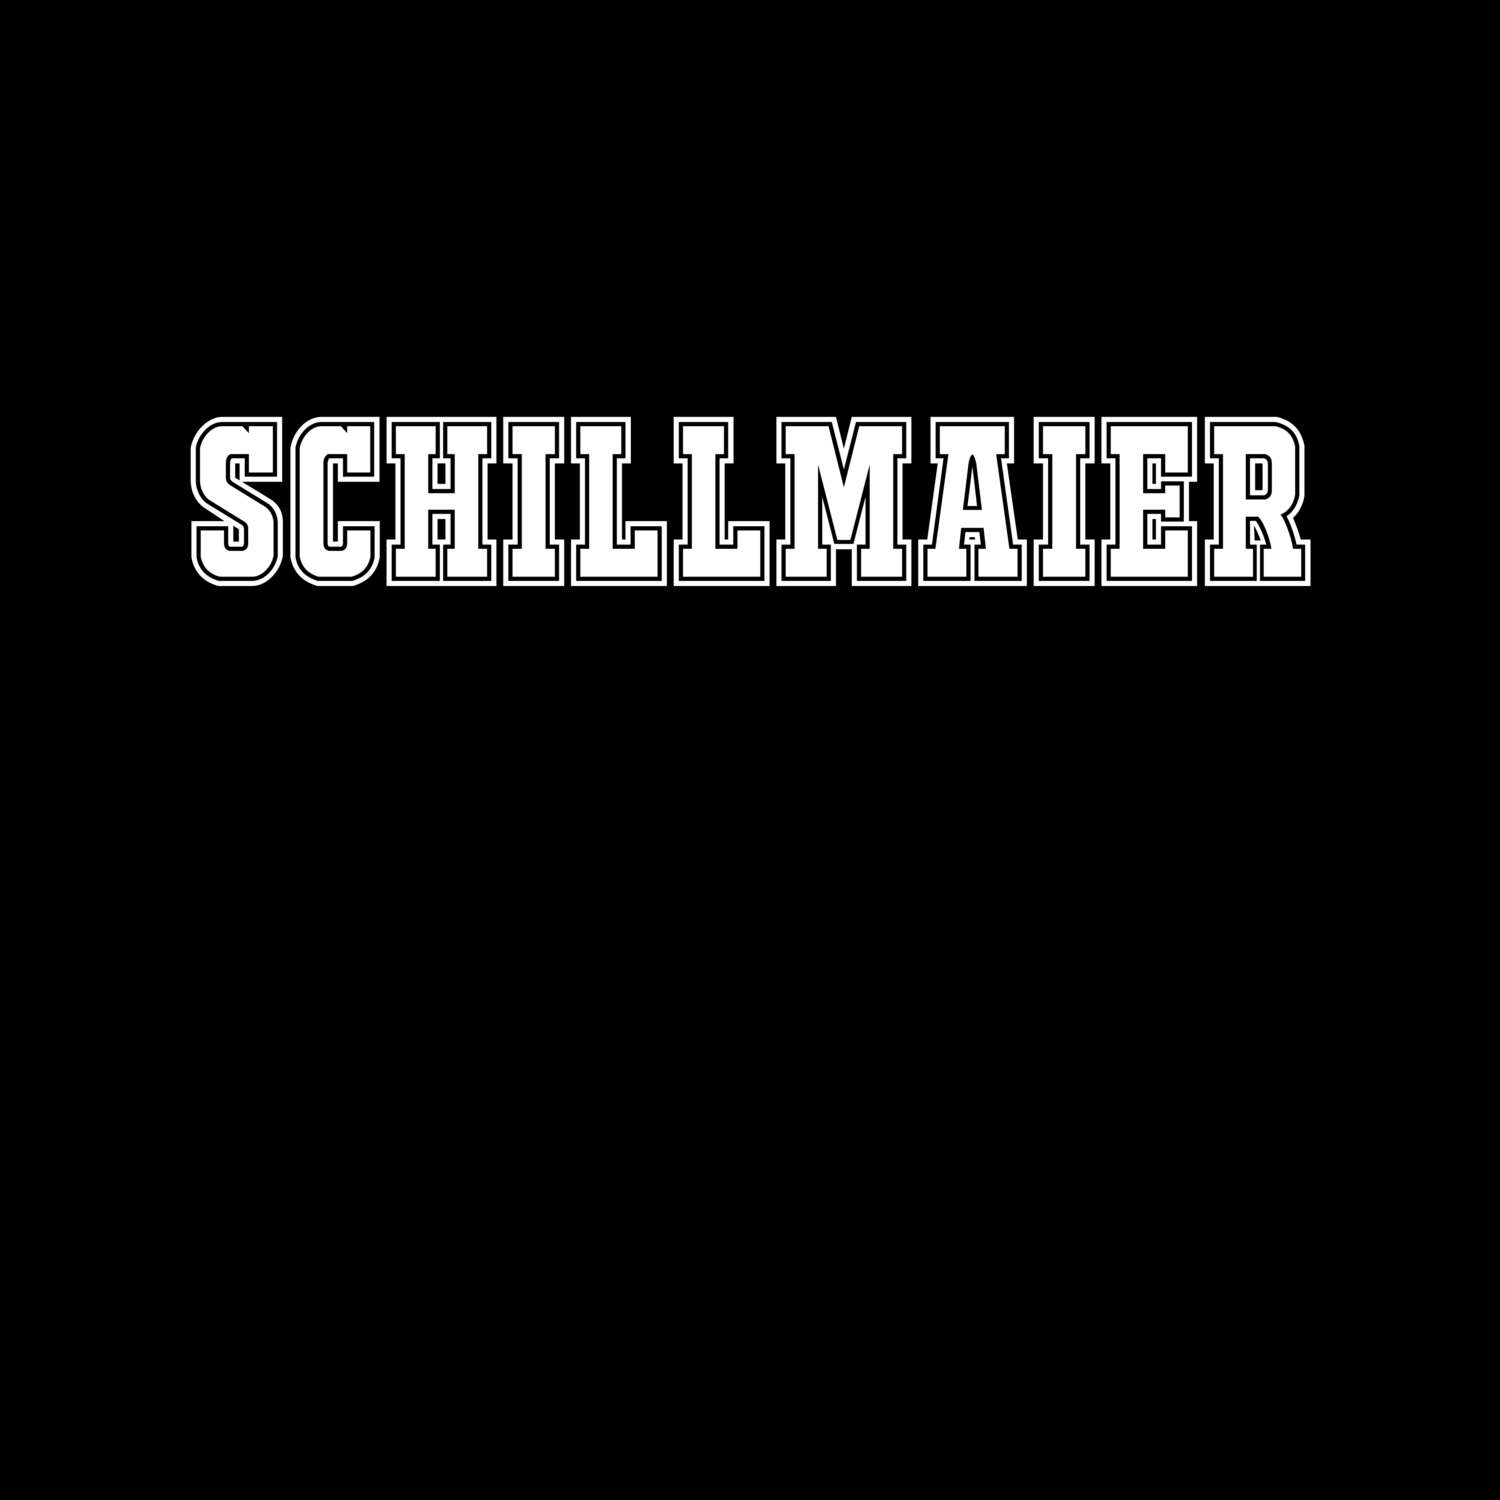 Schillmaier T-Shirt »Classic«